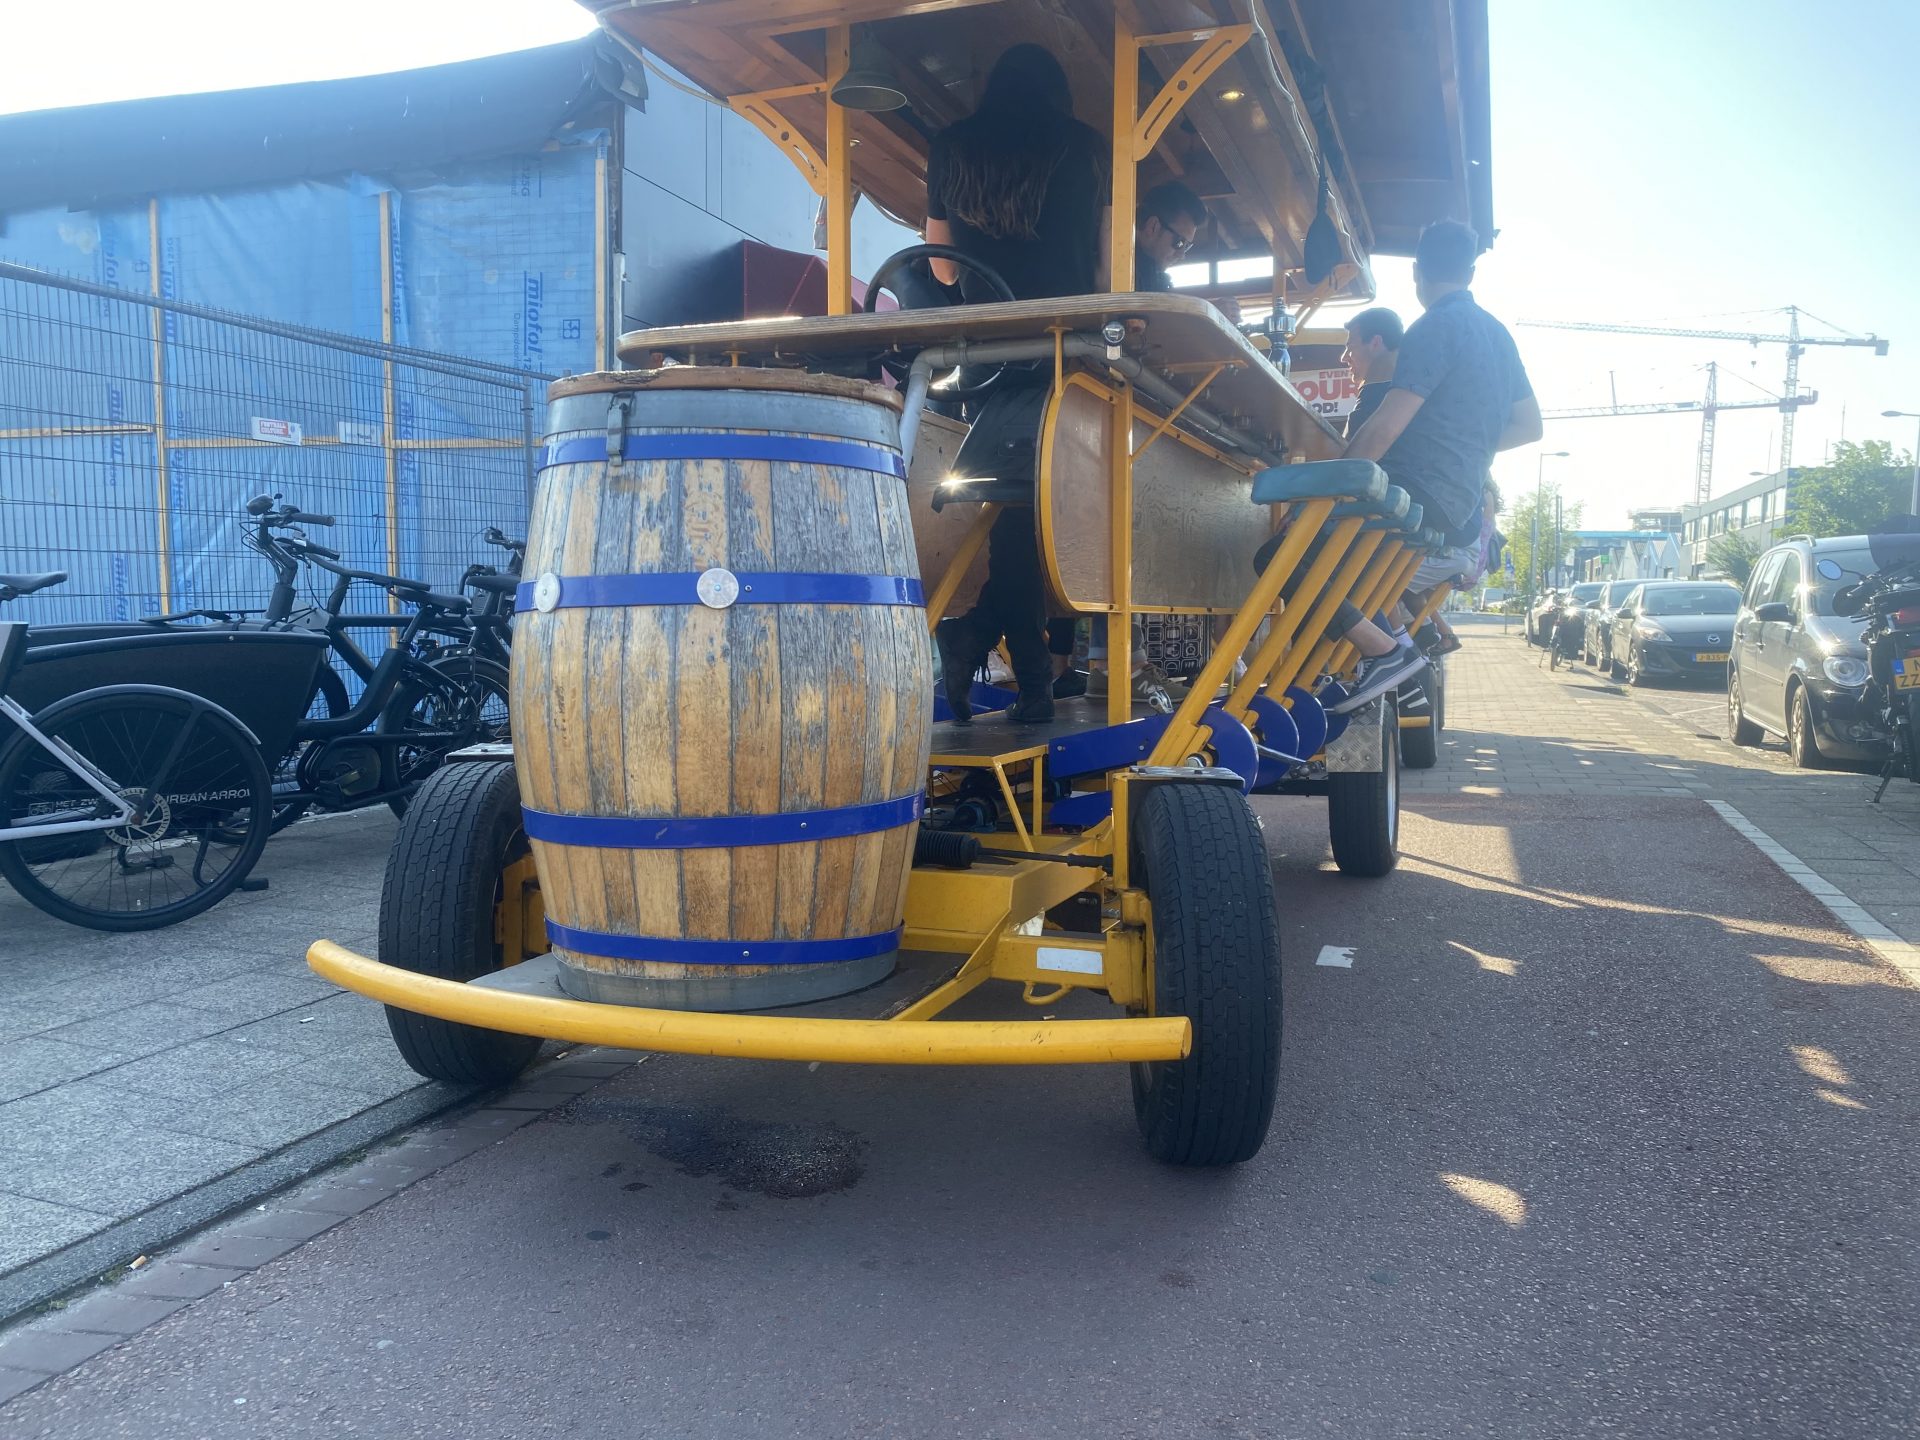 Bierfiets - Bierfahrrad - Amsterdam - Rotterdam - Prosecco-Fahrrad - Proseccofiets